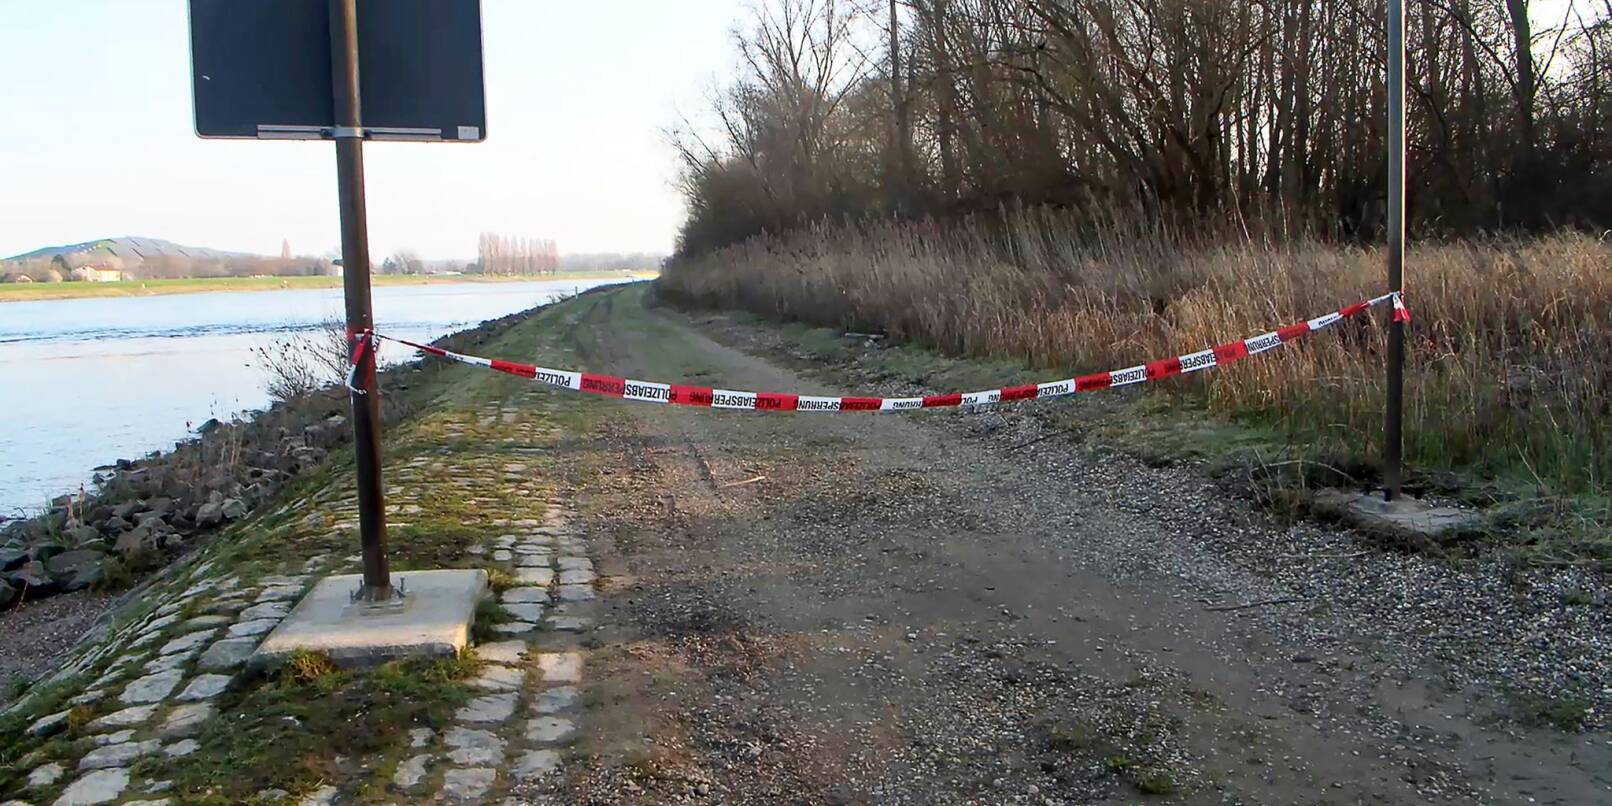 Am Rheinufer sind in den vergangenen Wochen zwei Leichen gefunden worden. Die Polizei ermittelt gegen ein tatverdächtiges Ehepaar.